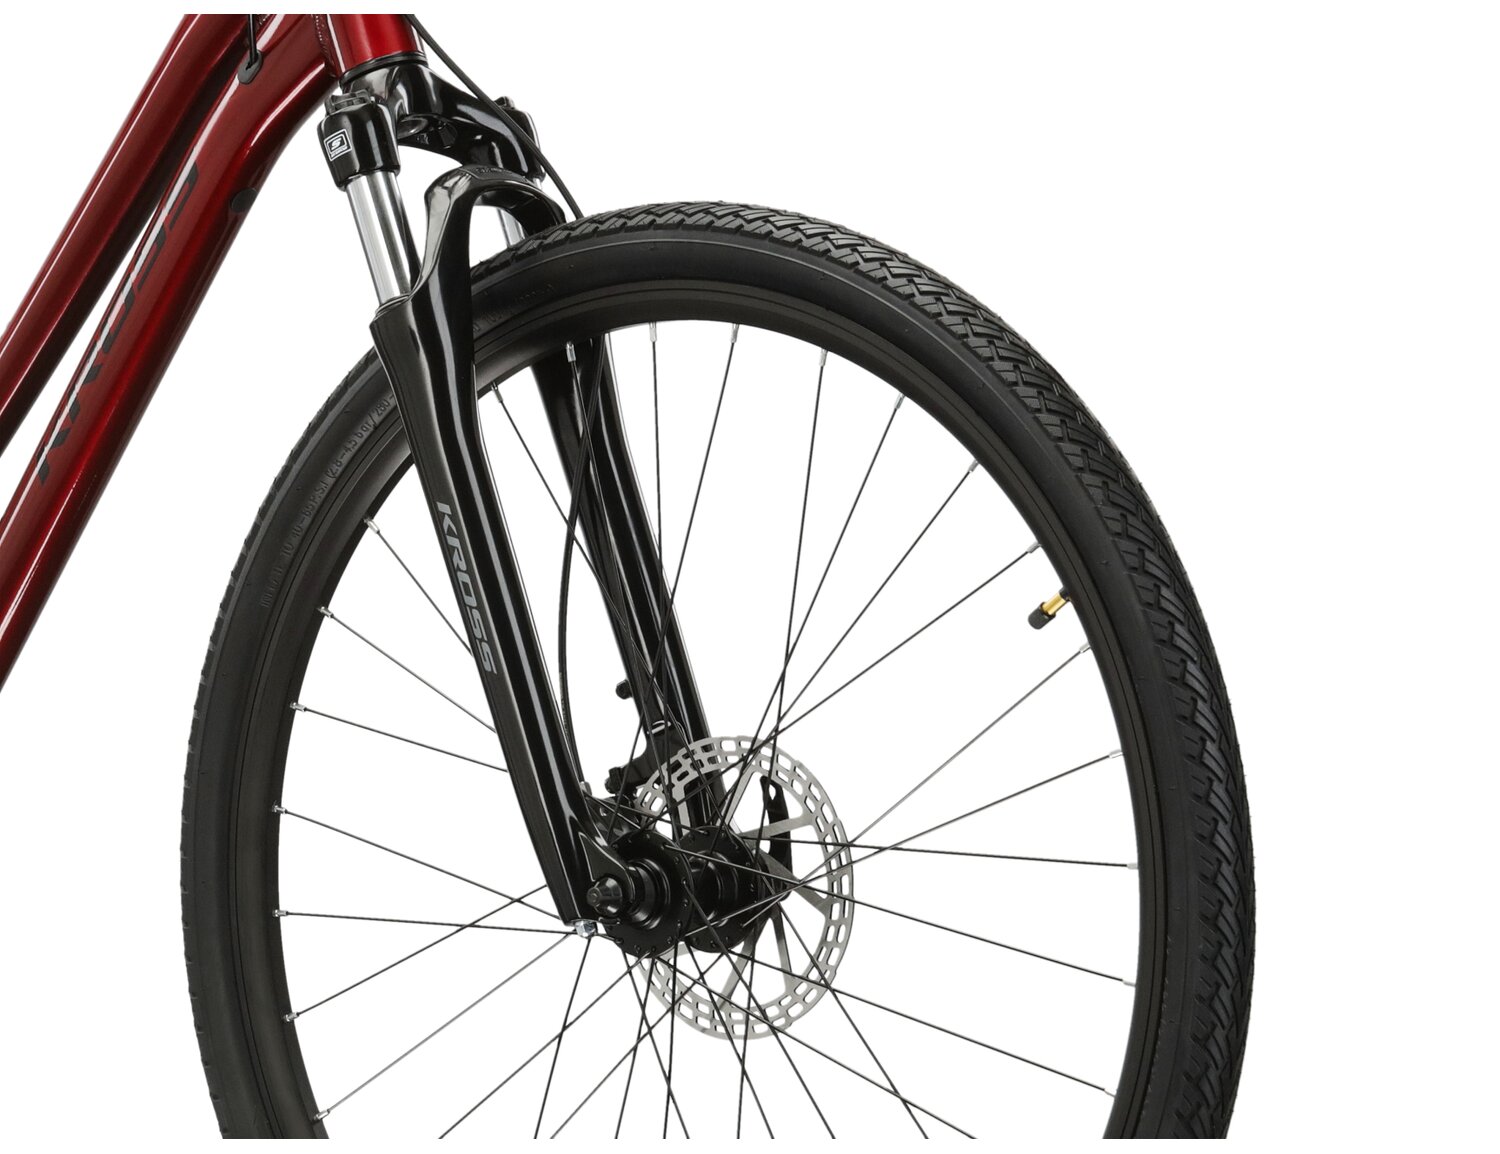  Aluminiowa rama w kolorze bordowym, amortyzowany widelec SR SUNTOUR NEX oraz opony WANDA G5001 28X1,75 w rowerze crossowym damskim Kross Evado 4.0 